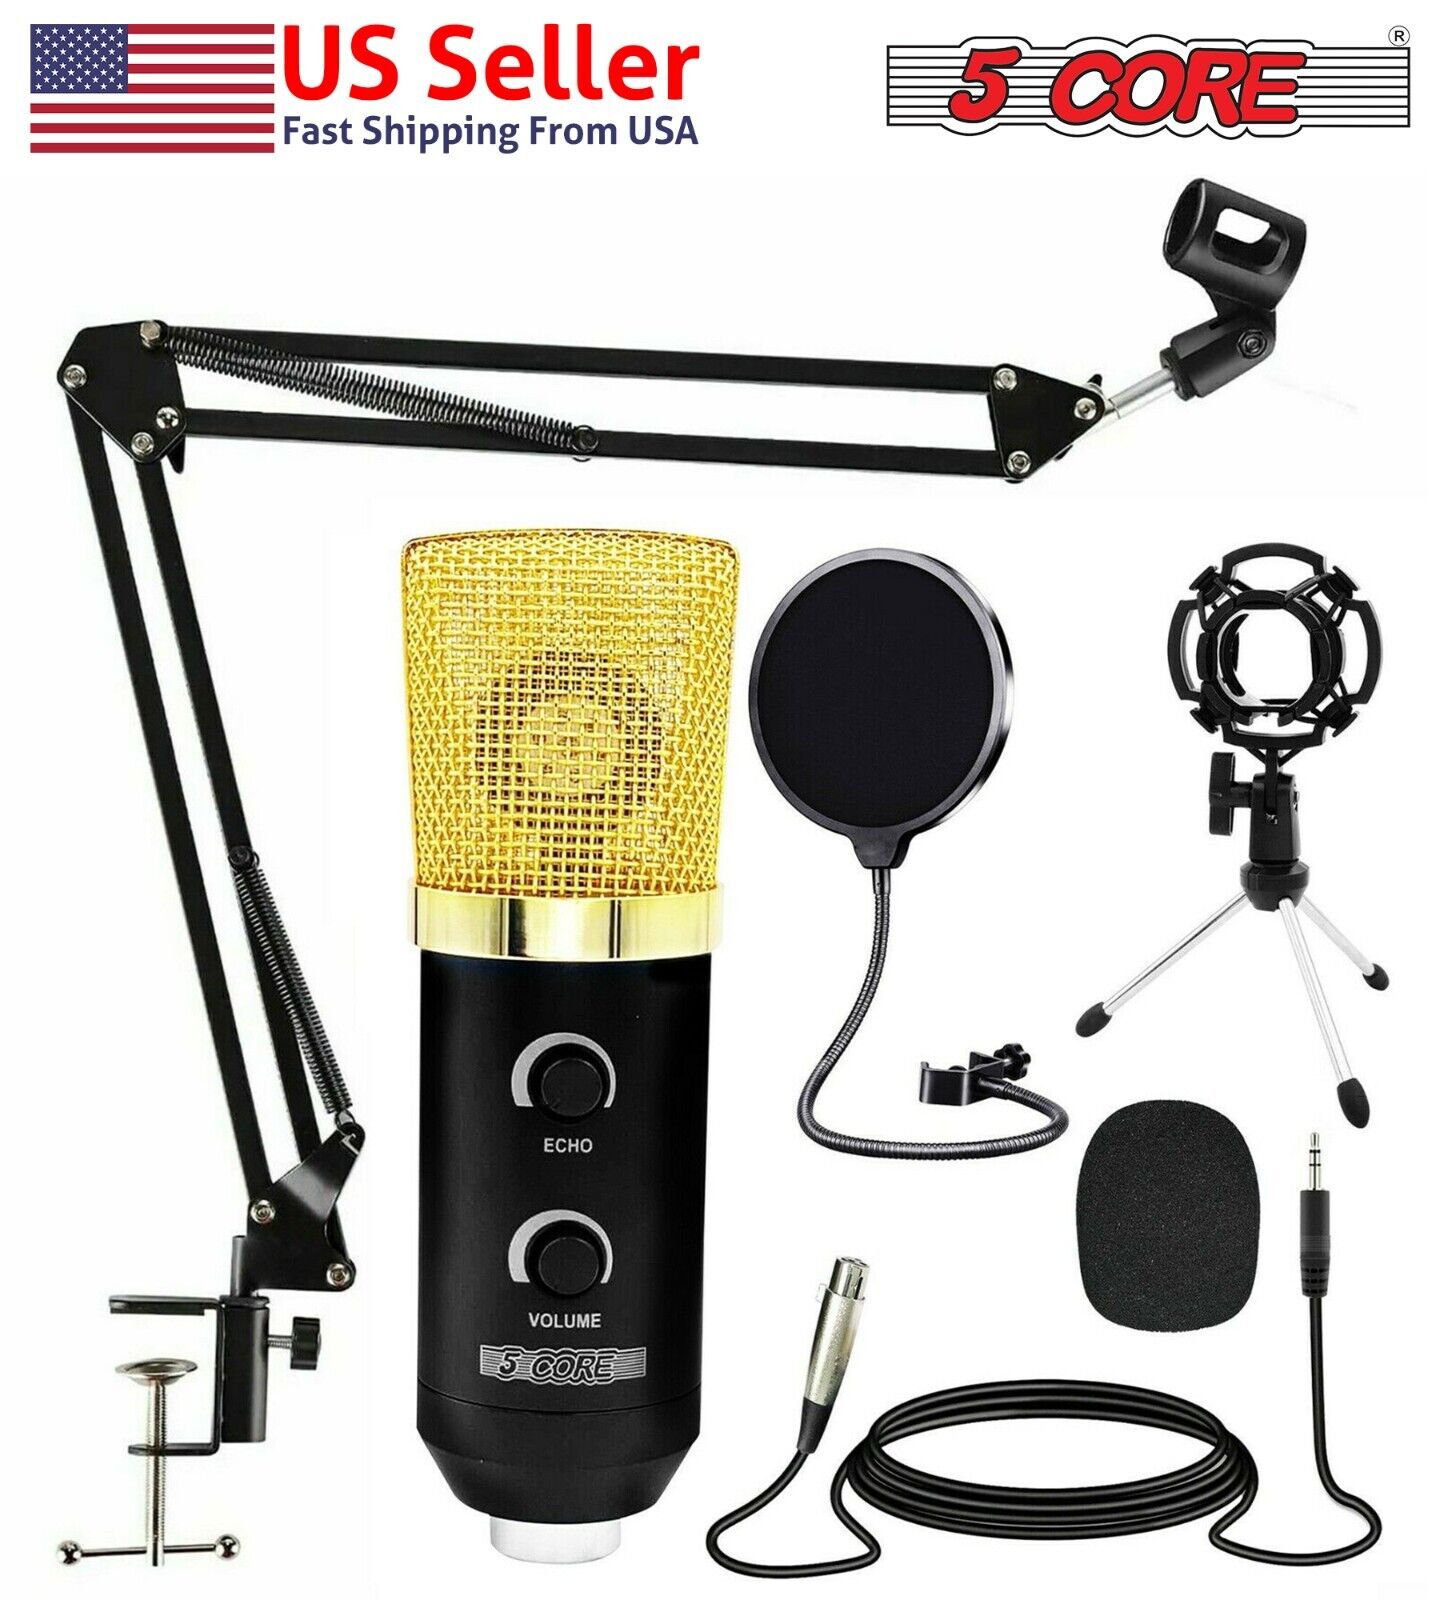 5Core Premium Pro Audio Condenser Recording Microphone Podcast Gaming Studio Mic